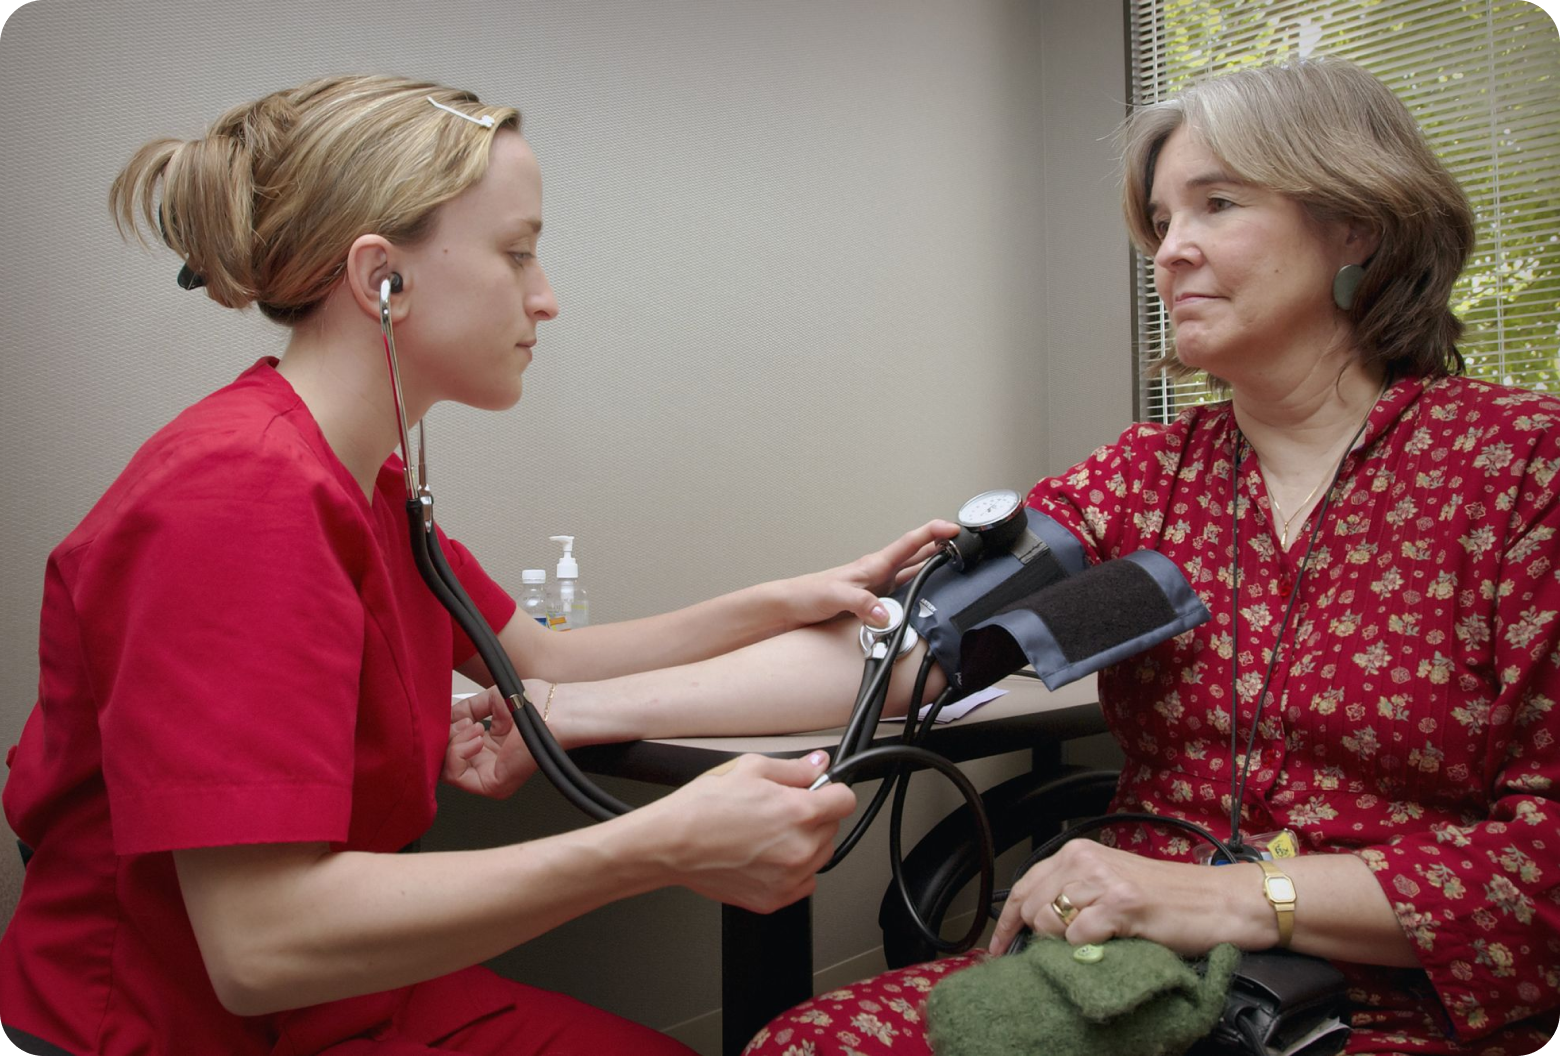 Nurse taking blood pressure of senior citizen